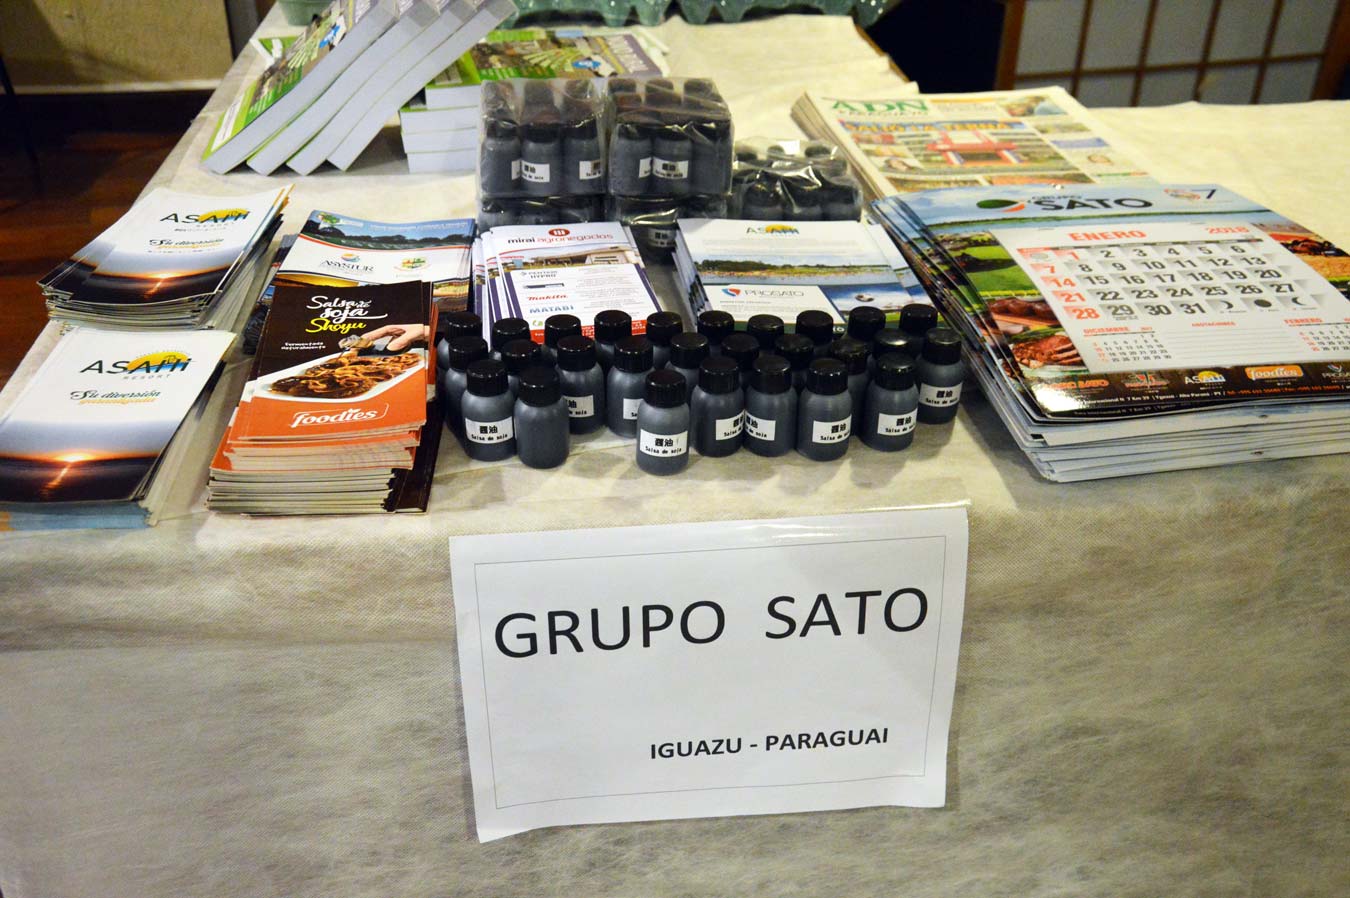 Grupo Sato de Iguazu no Paraguai trouxe amostra do shoyu artesanal, Turismo Rural e os produtos e serviços do Grupo.. (Foto: Luci Judice Yizima)